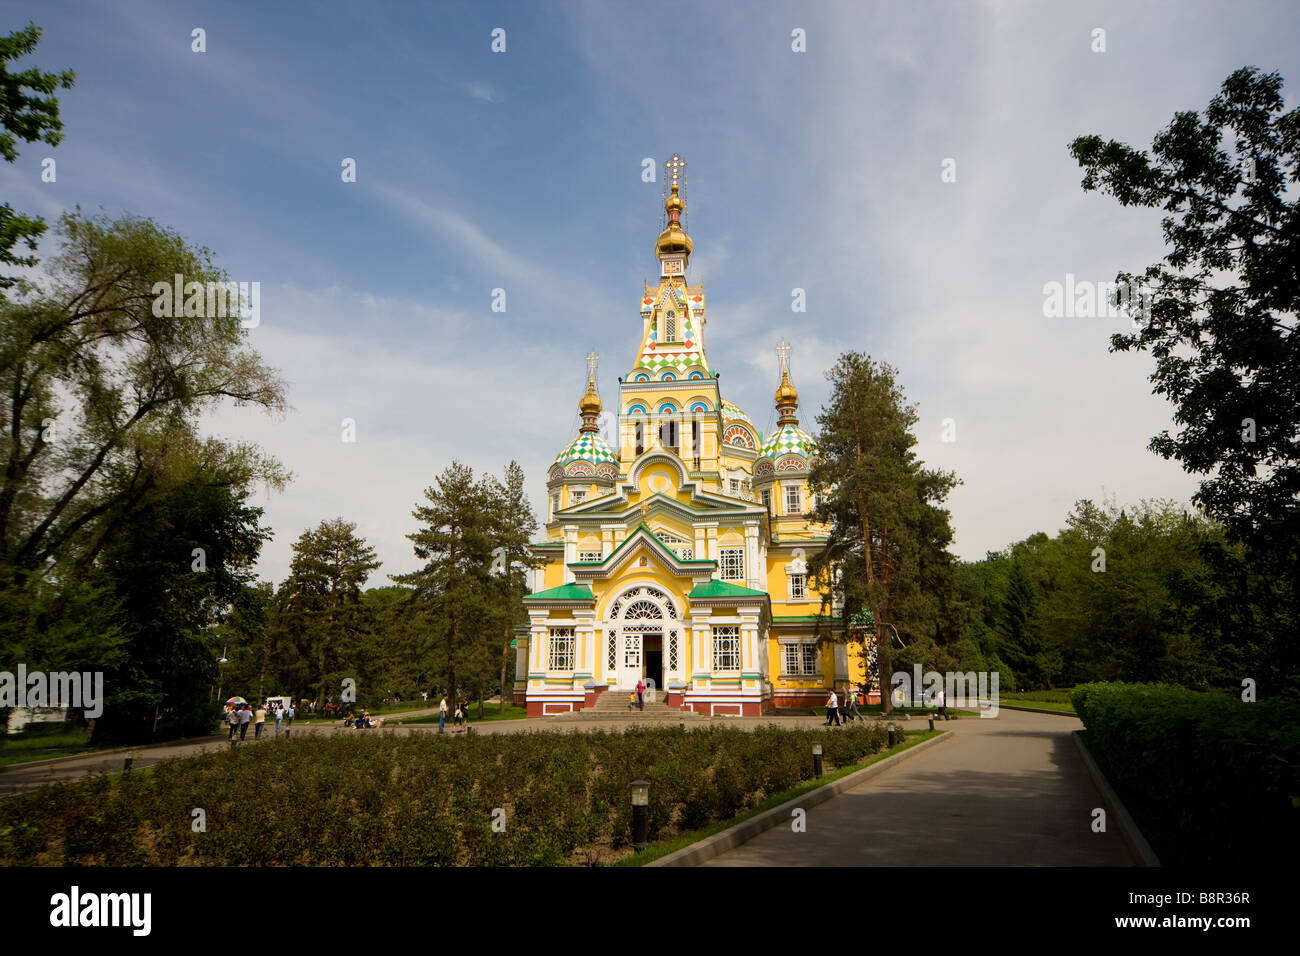 Ortodossa Russa Cattedrale di ascensione o Zenkov cattedrale costruita in legno senza chiodi in Panfilov Park, Almaty, Kazakhstan. Foto Stock